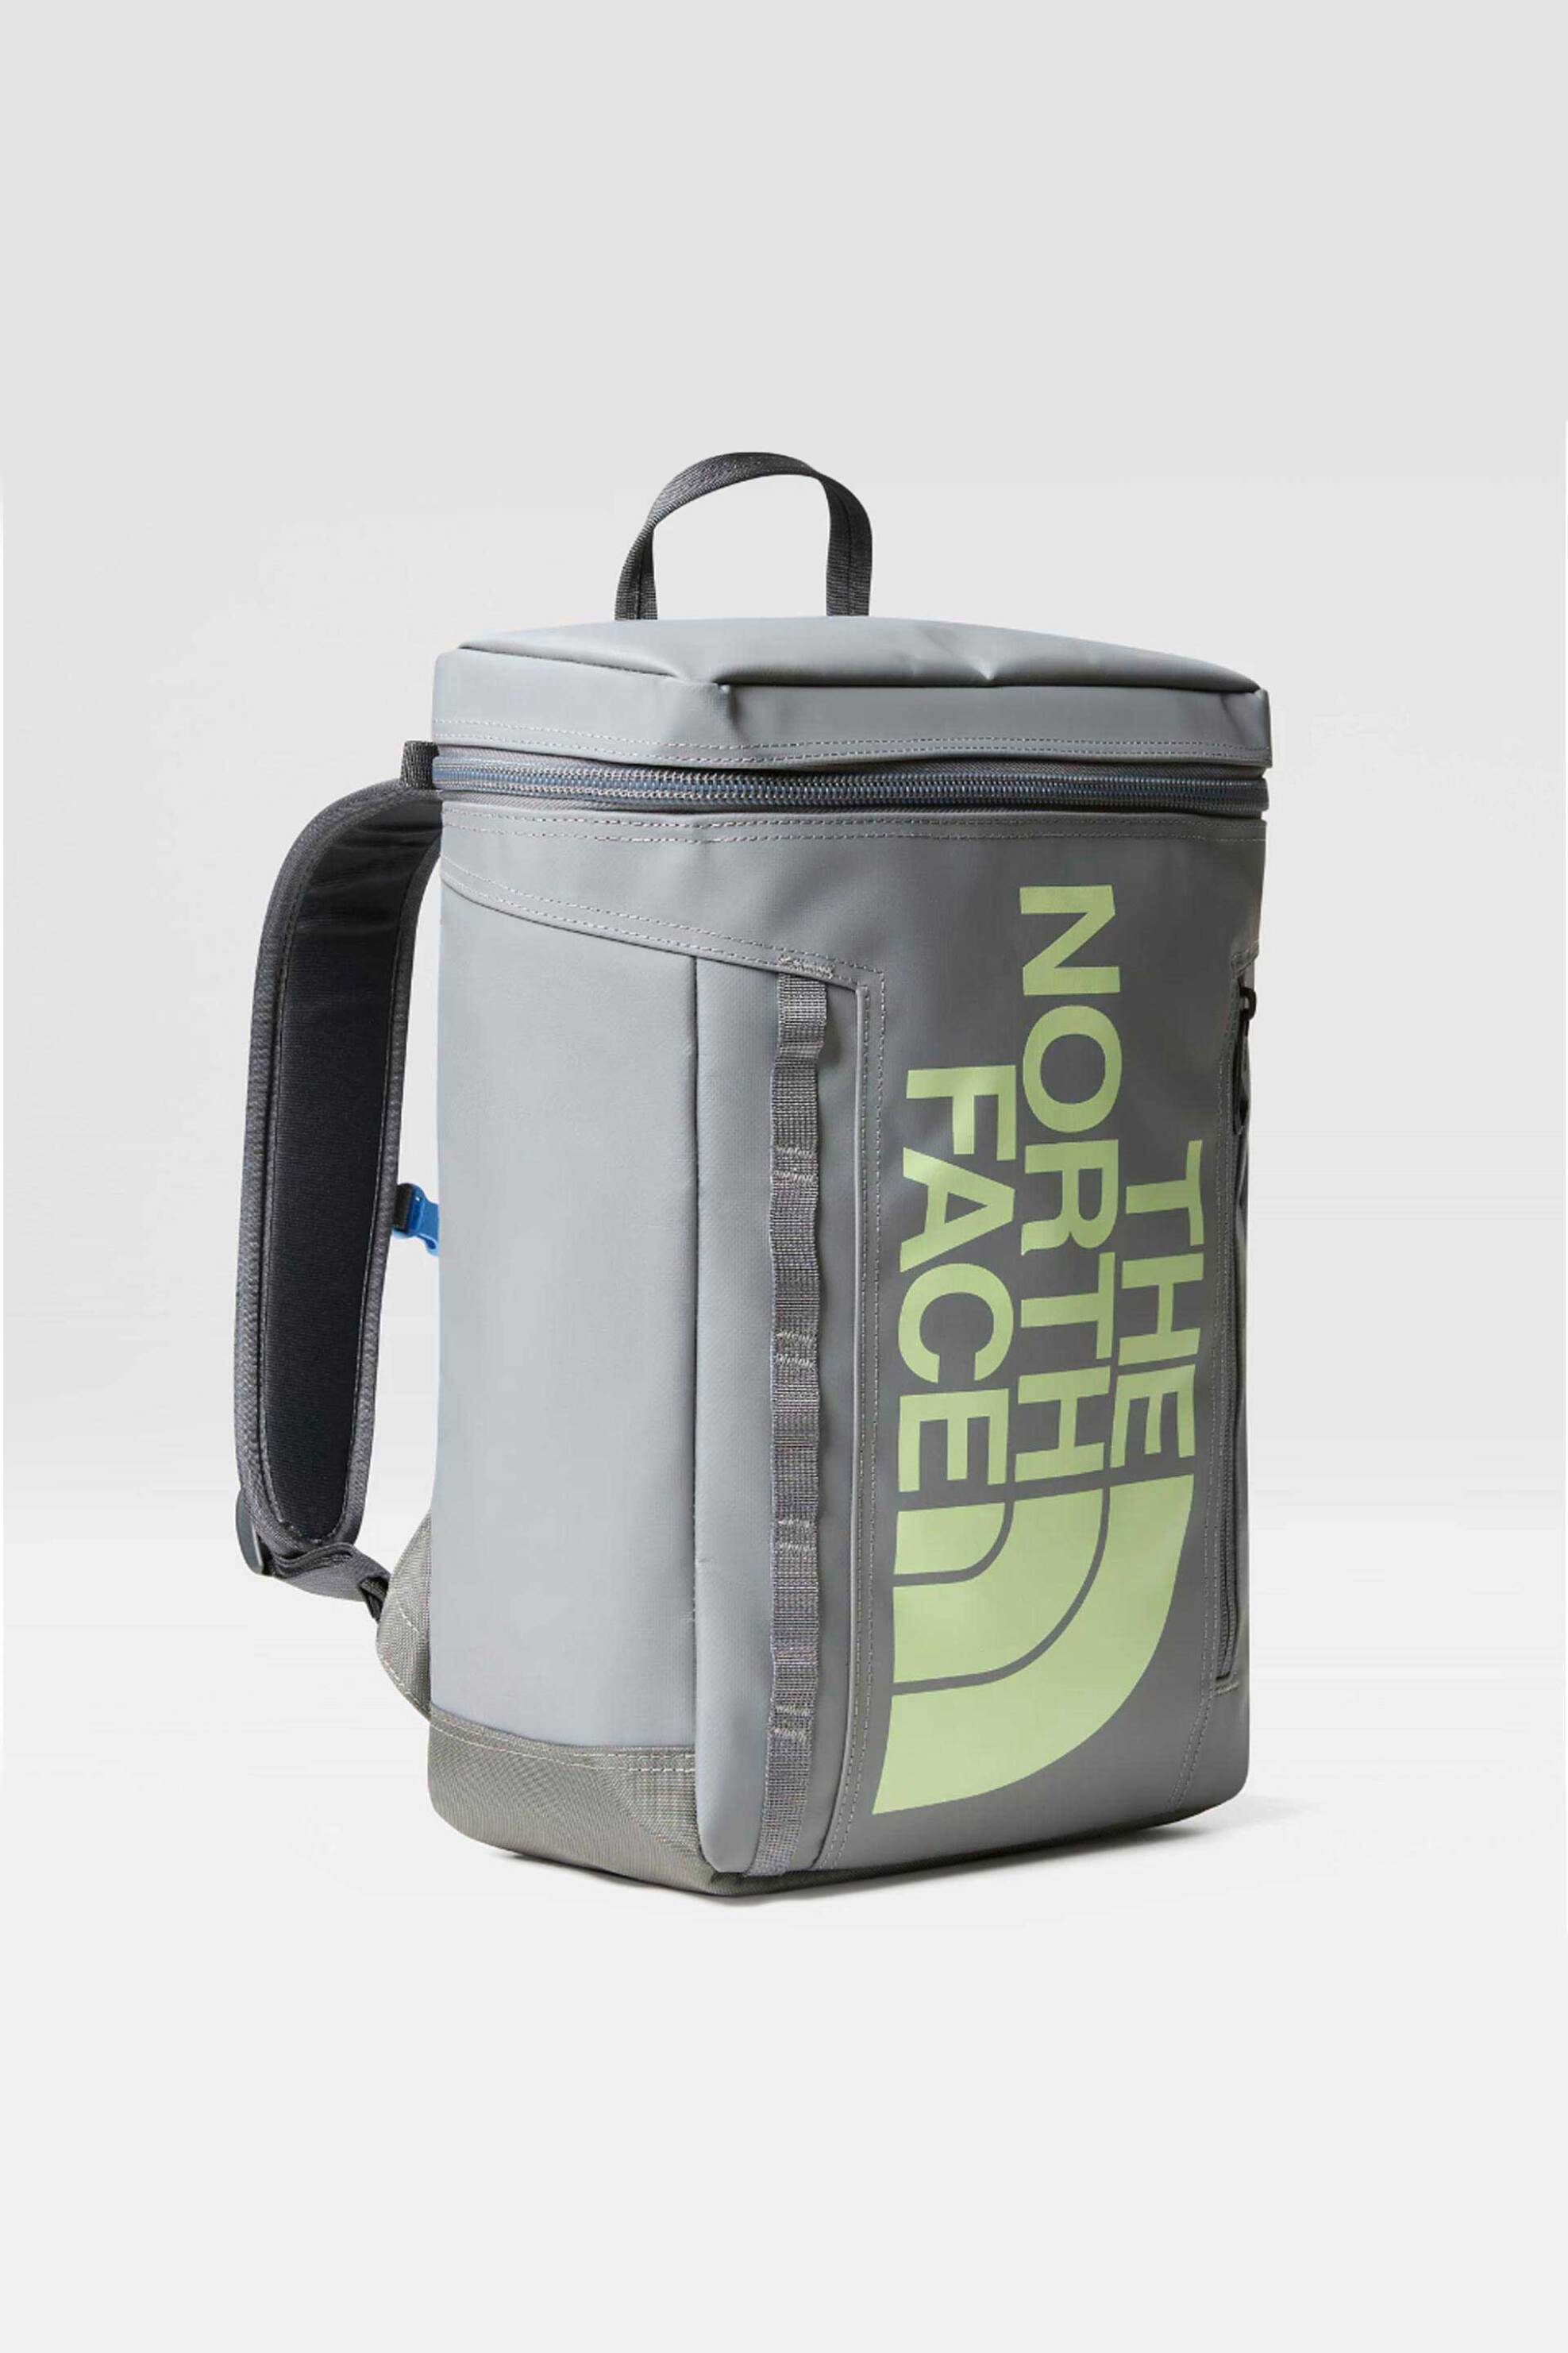 Ανδρική Μόδα > Ανδρικές Τσάντες > Ανδρικά Σακίδια & Backpacks The North Face unisex backpack με contrast logo print και πολλαπλές θήκες "Base Camp Fuse Box" - NF0A873WYOB1 Γκρι